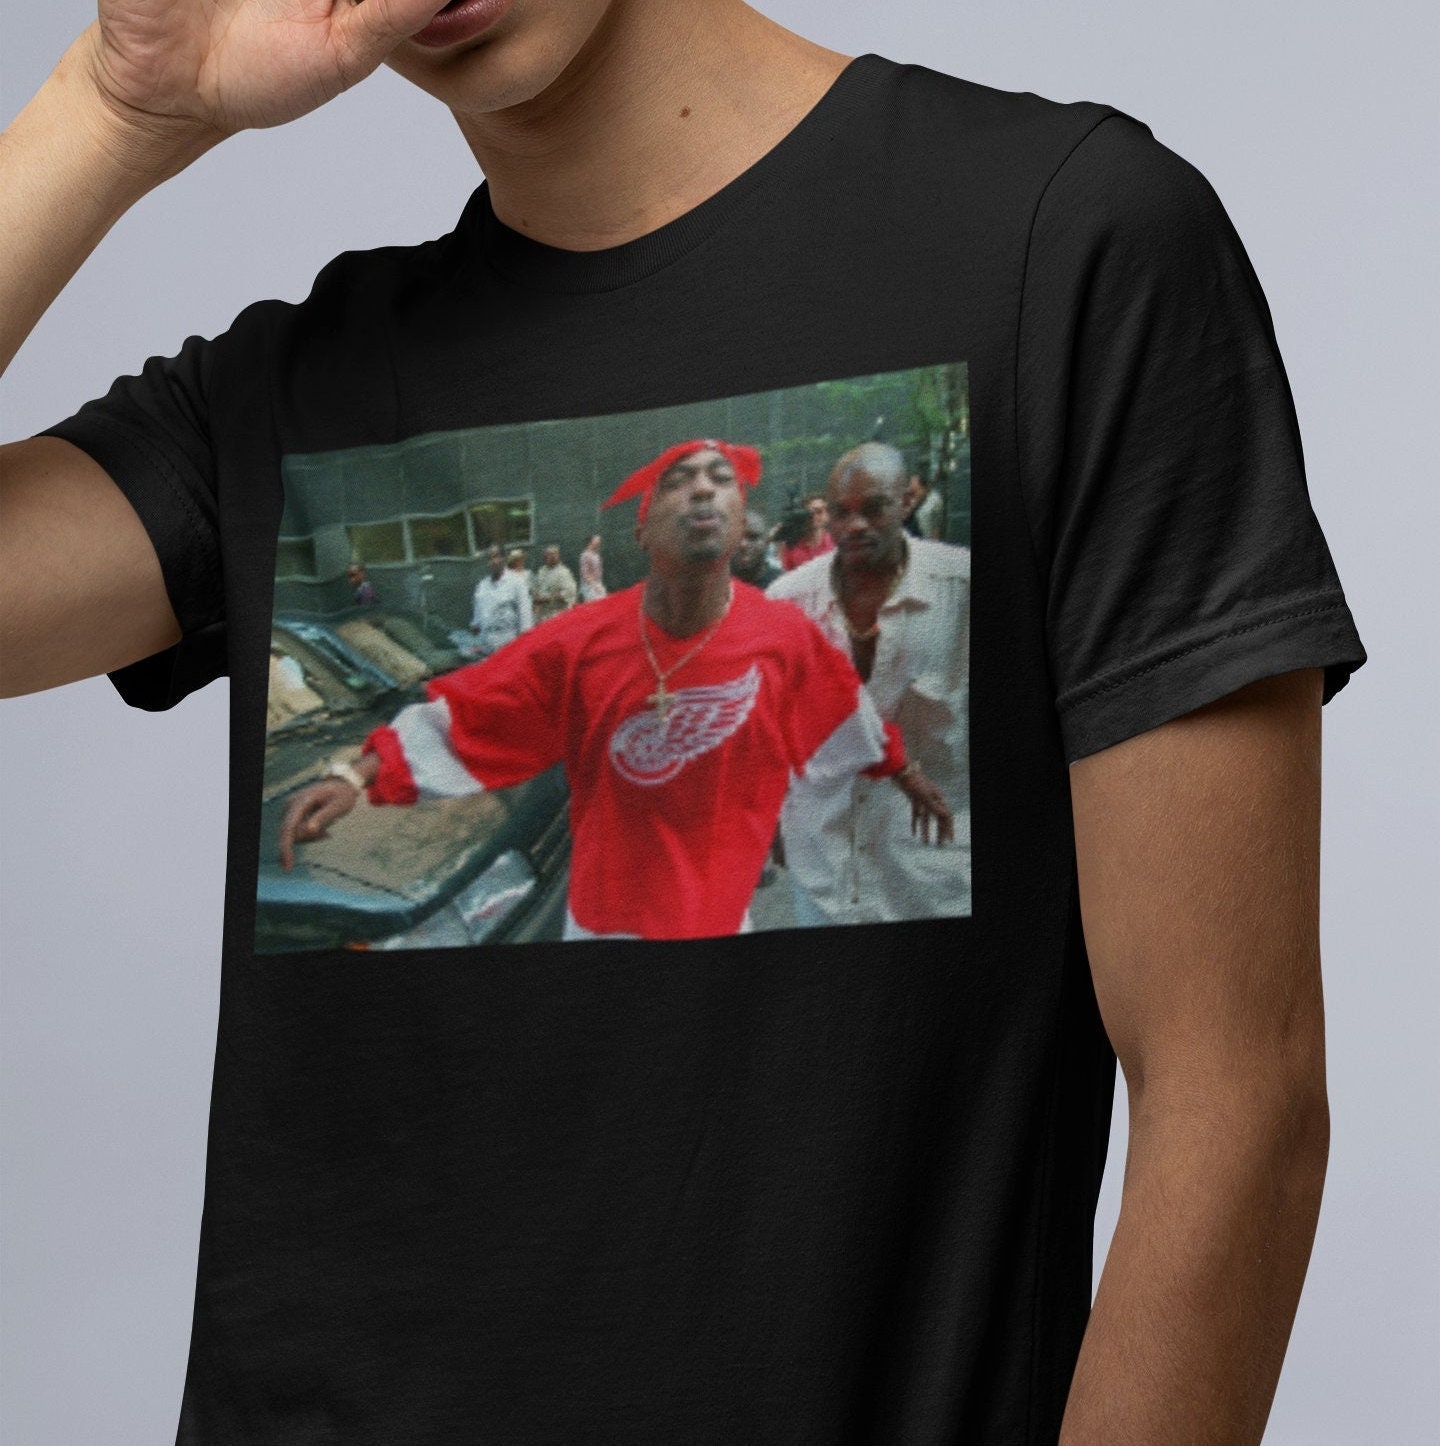 Tupac T-Shirt, Red Wings T-Shirt, Rapper Shirt, Rap Shirt, 2pac Shirt